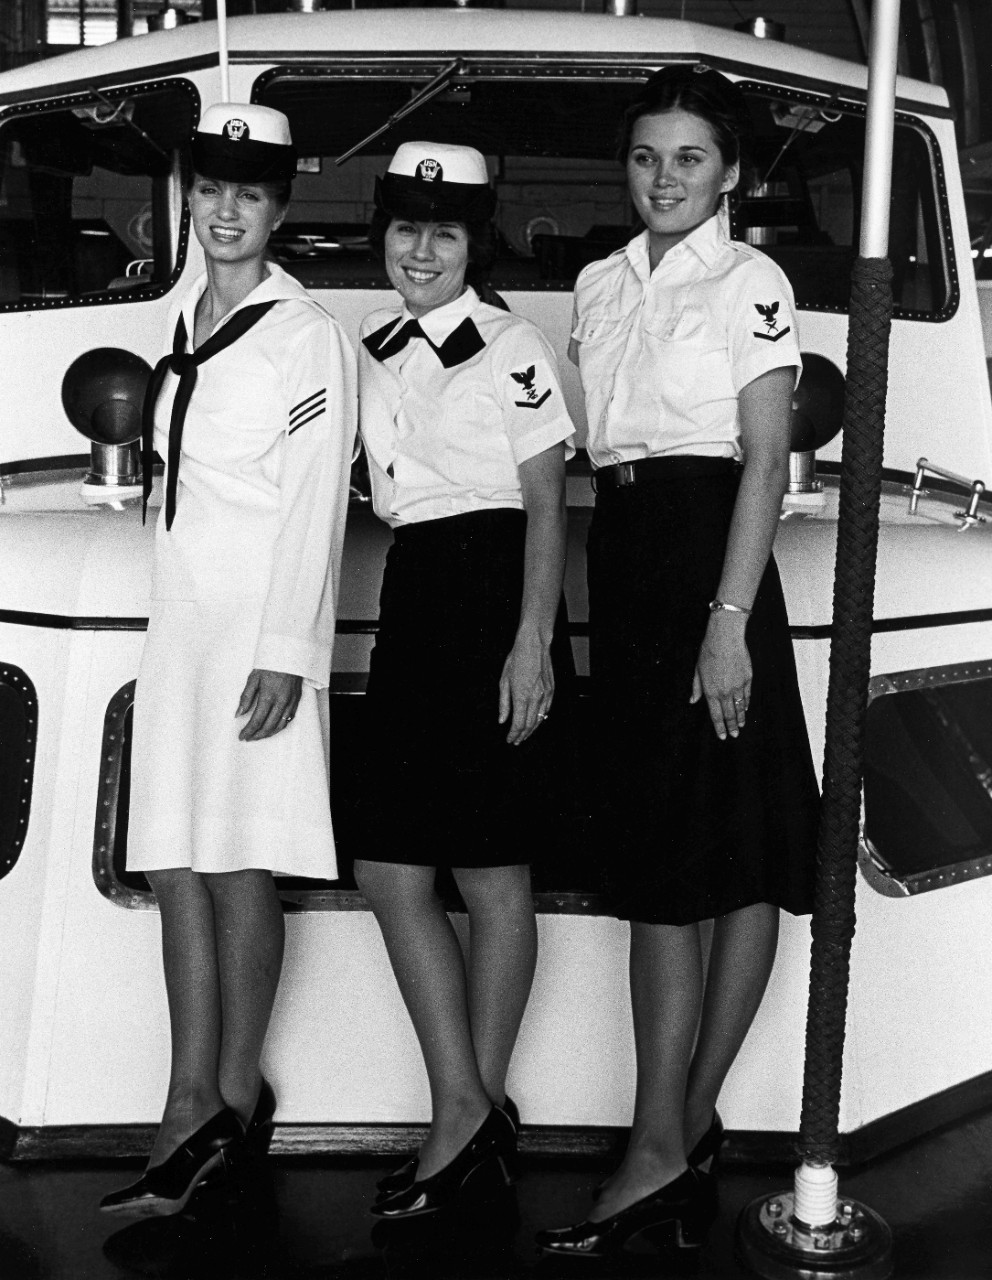 Female sailors modeling uniforms